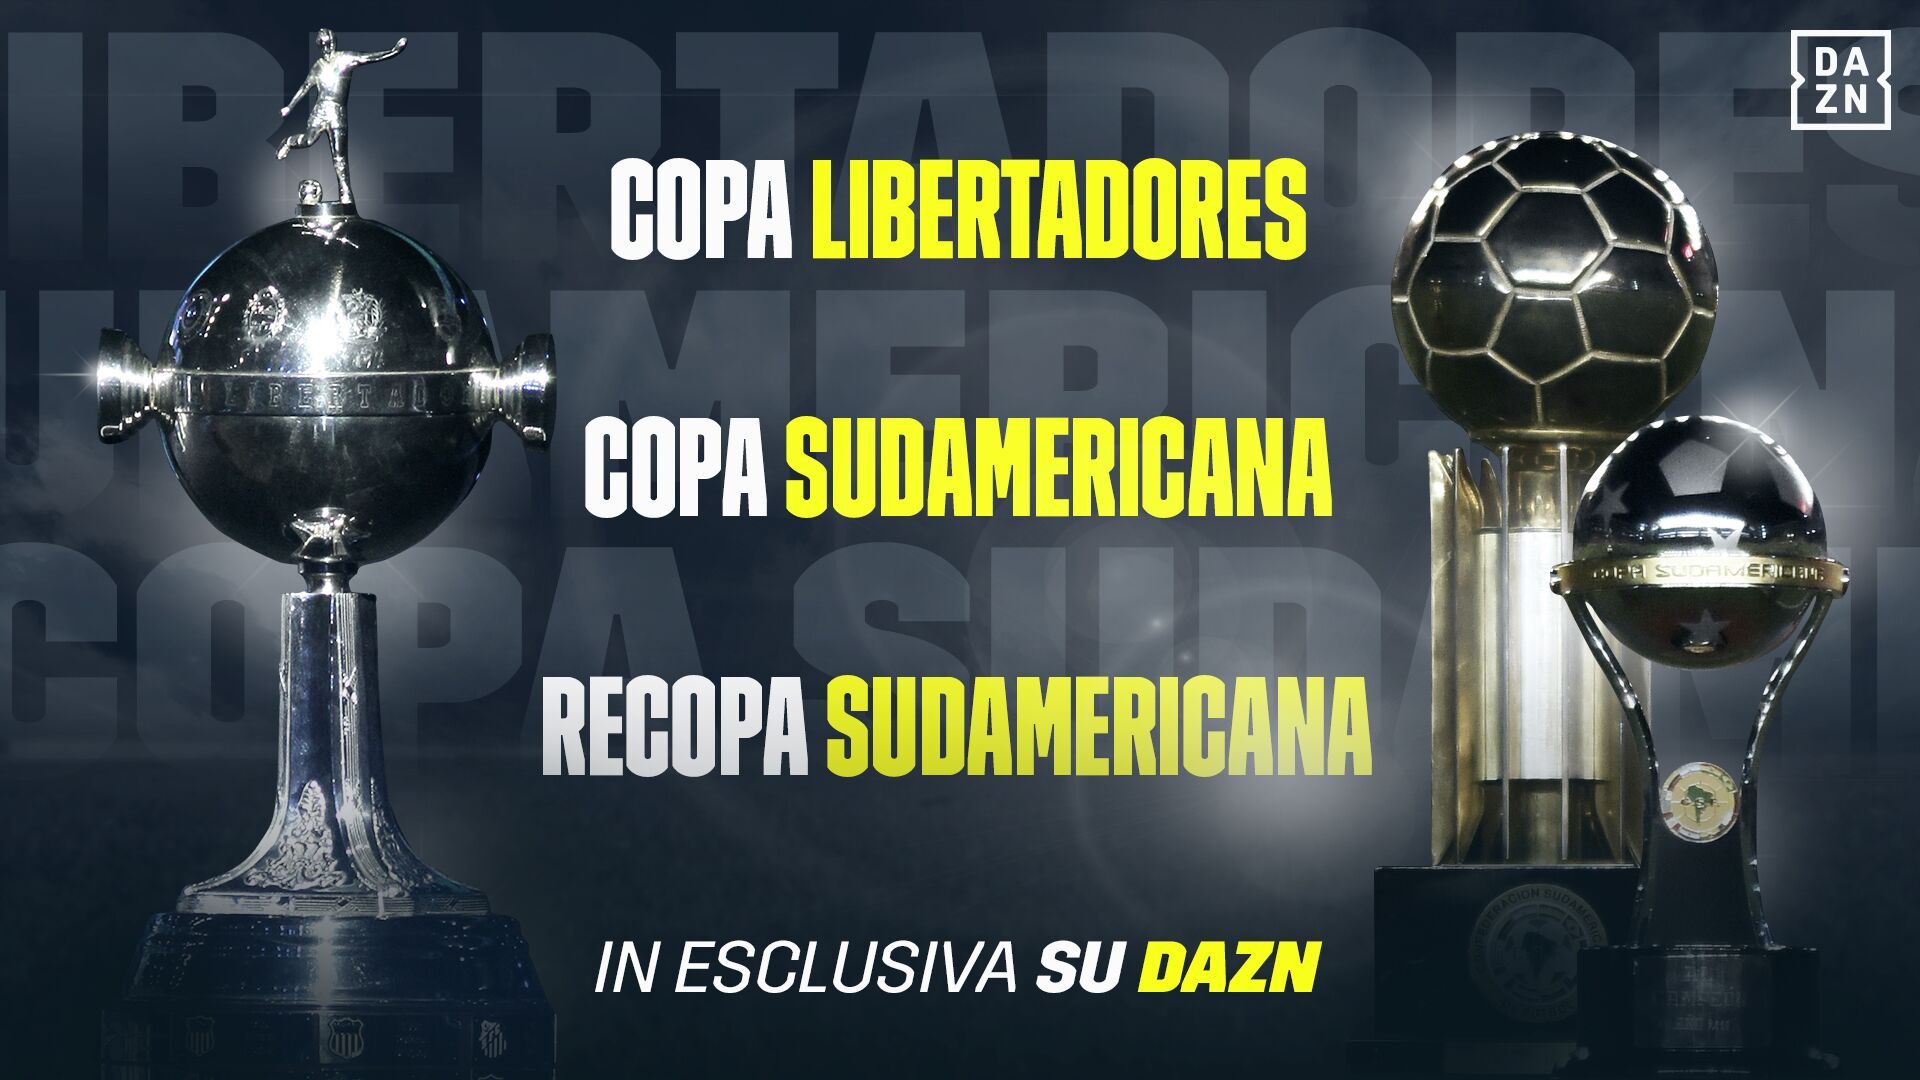 DAZN rinnova i diritti per Libertadores, Sudamericana e Recopa fino al 2022.